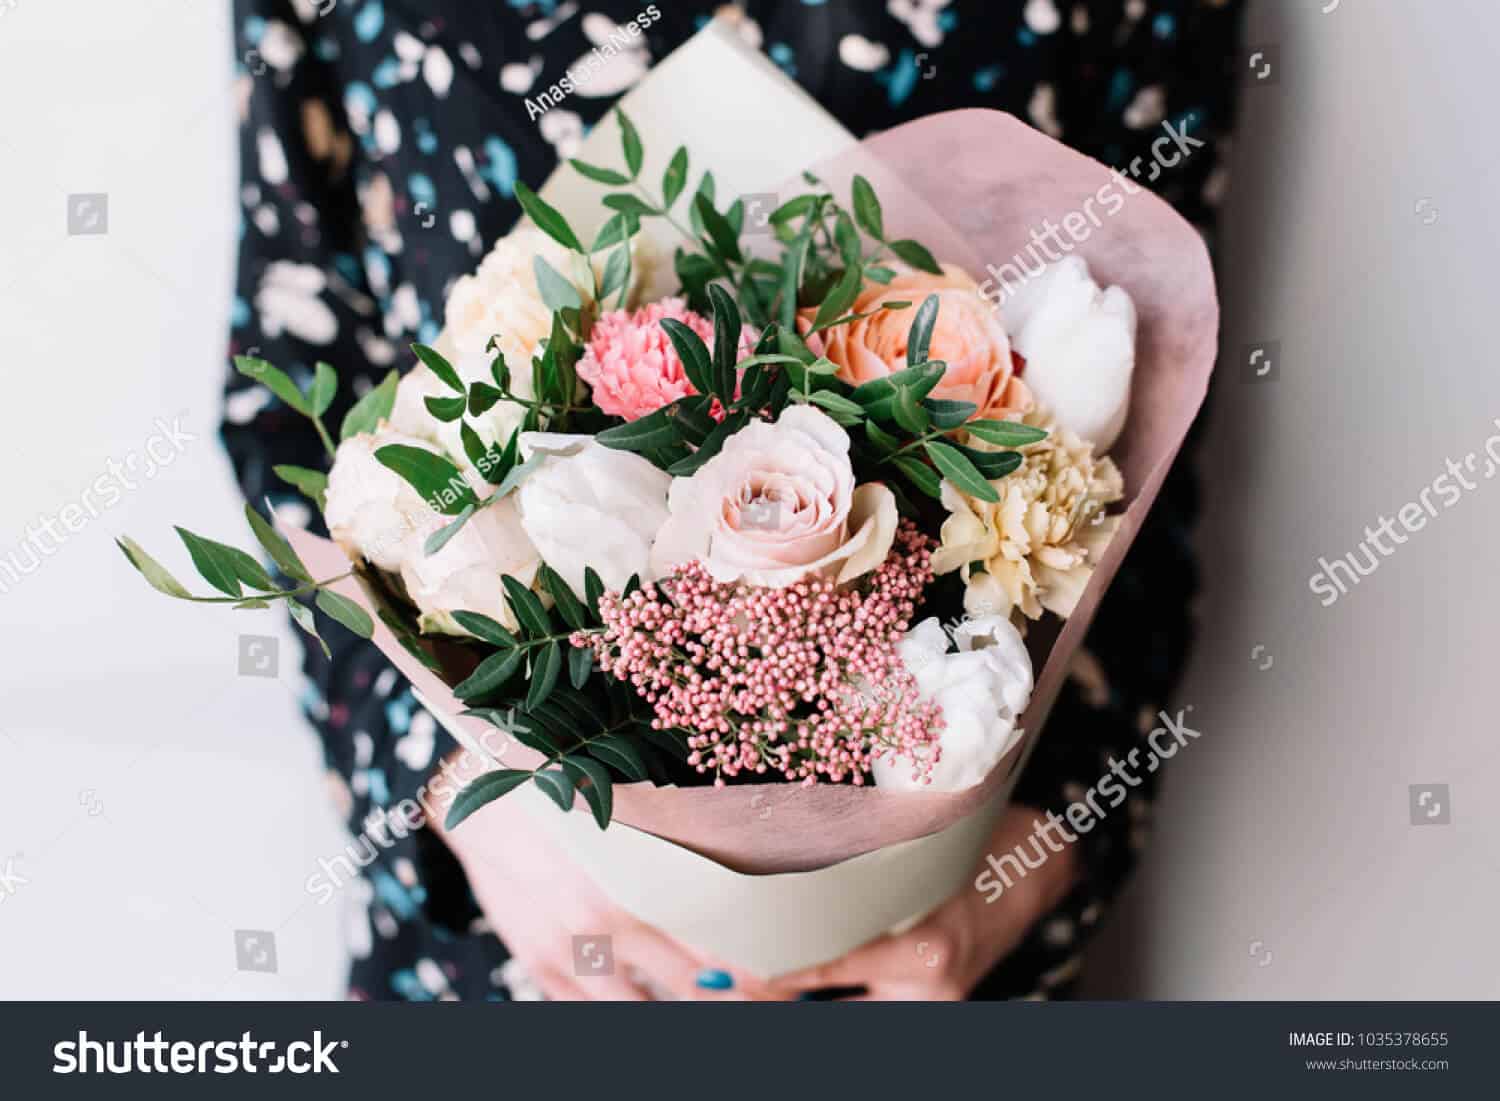 6 triệu hình ảnh bó hoa đẹp cho ngày 8/3 chất lượng cao trên Shutterstock